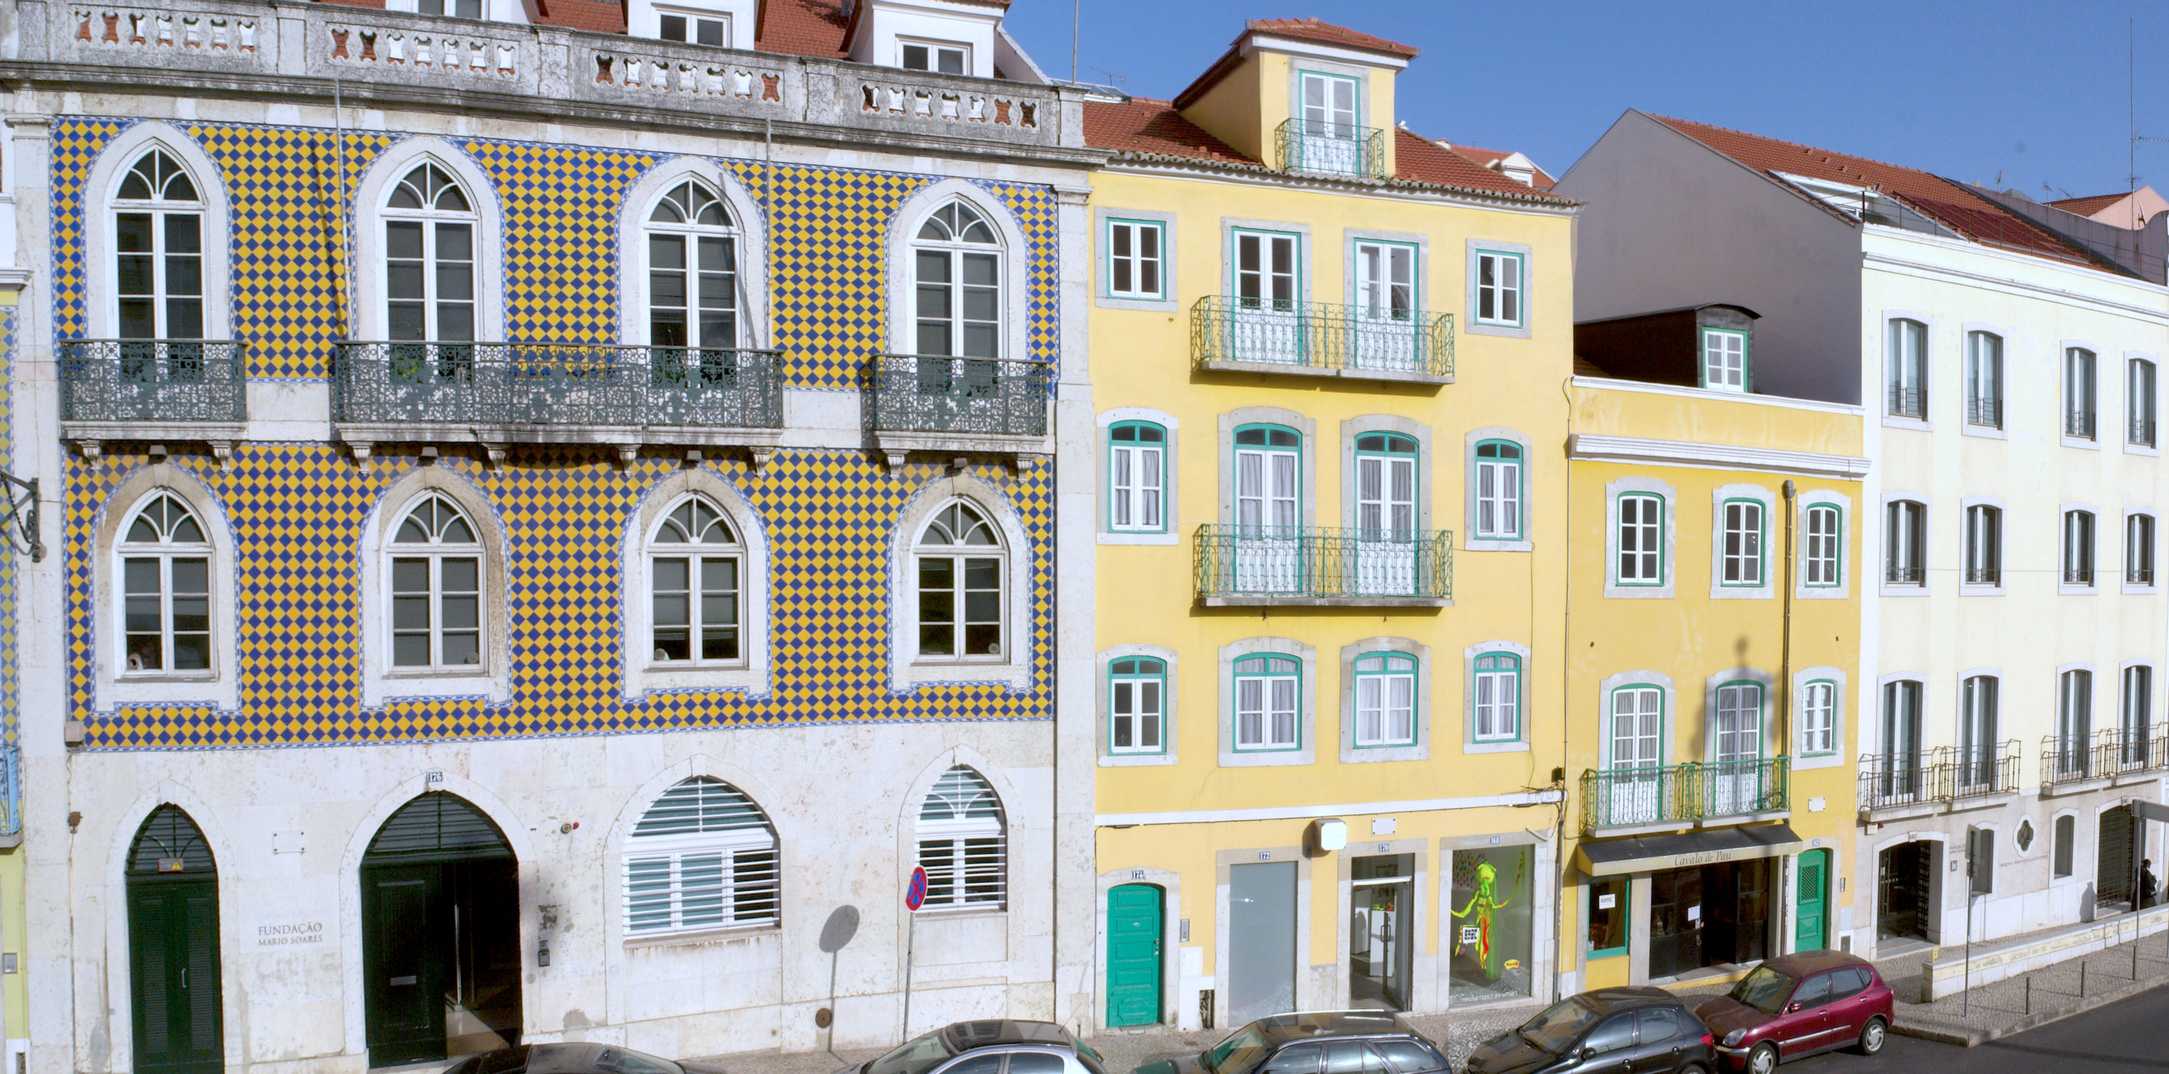 Fundação Mário Soares building in Lisbon